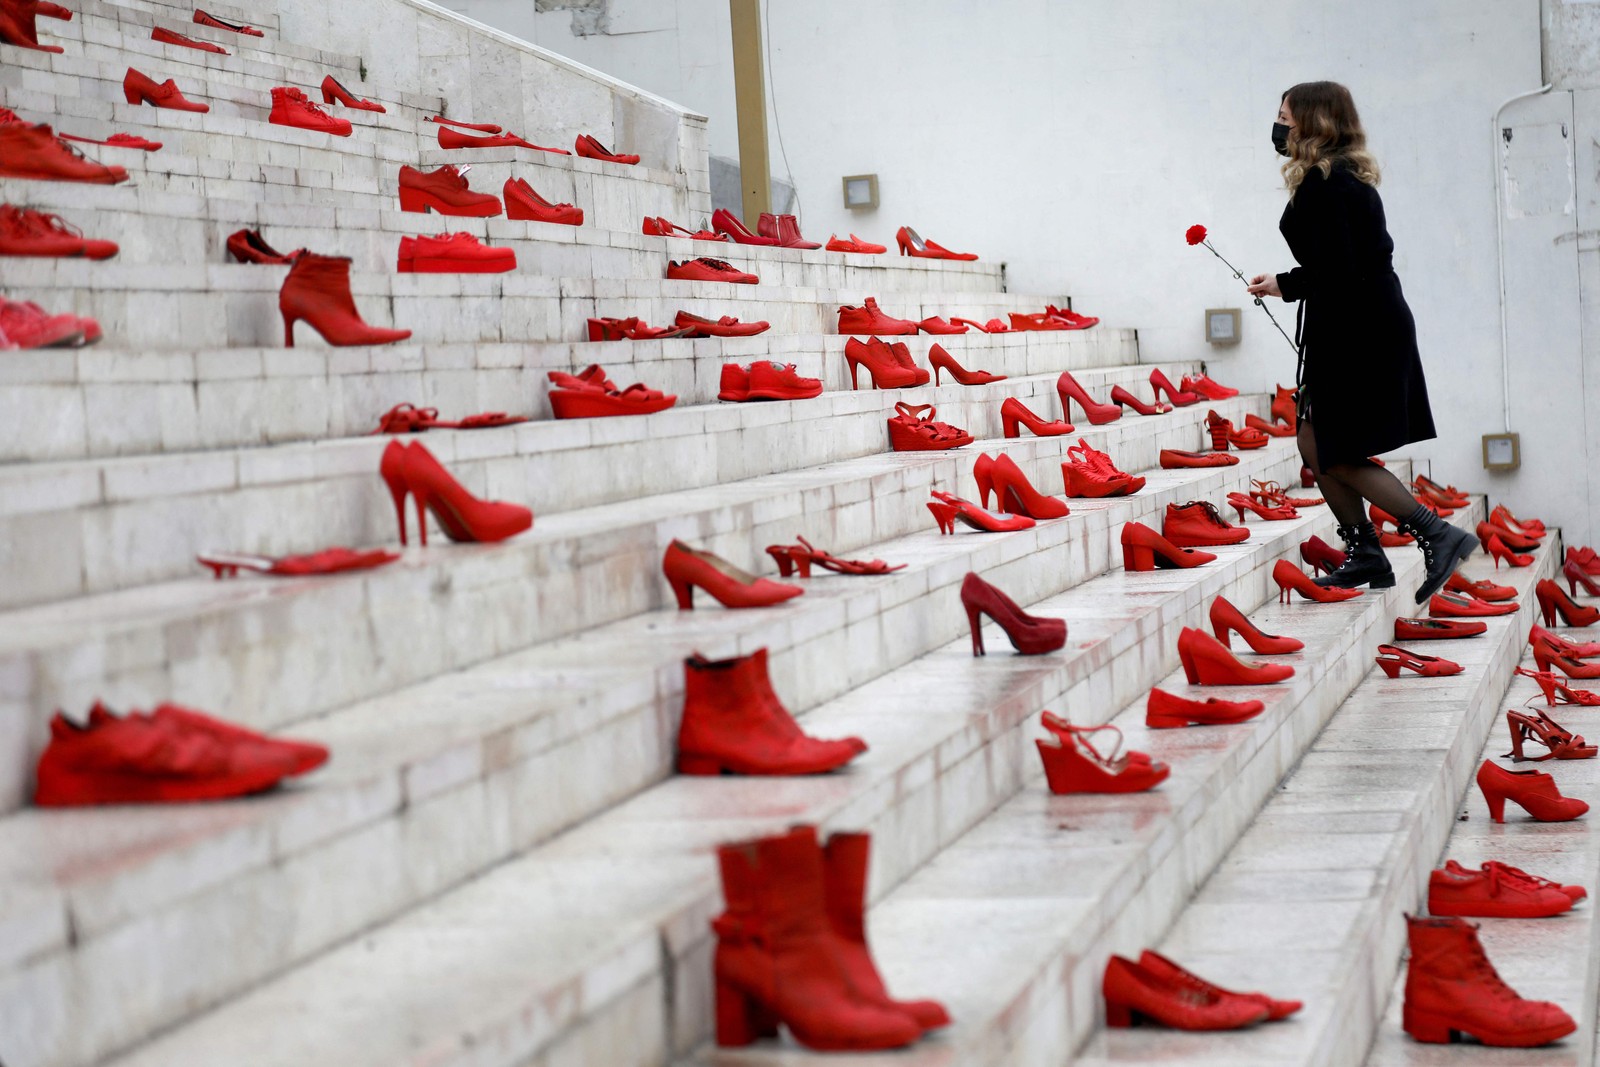 Mulher coloca uma flor vermelha em uma instalação de sapatos vermelhos femininos exibidos na escada, como um símbolo para denunciar a violência contra as mulheres, na praça principal de Durresi, em Tirana, AlbâniaAFP